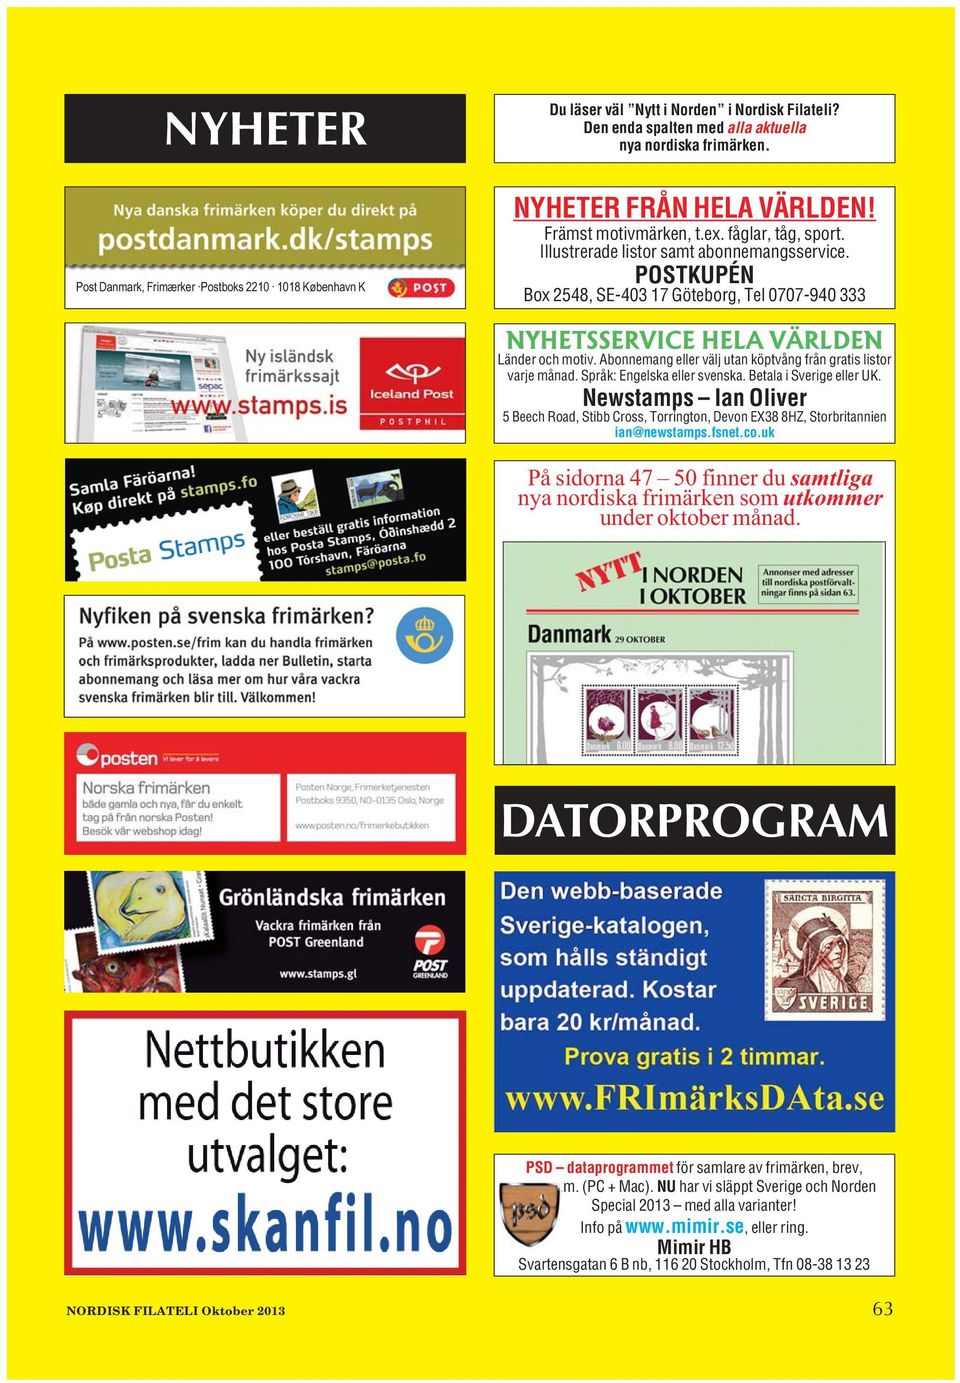 Abonnemang eller välj utan köptvång från gratis listor varje månad. Språk: Engelska eller svenska. Betala i Sverige eller UK.